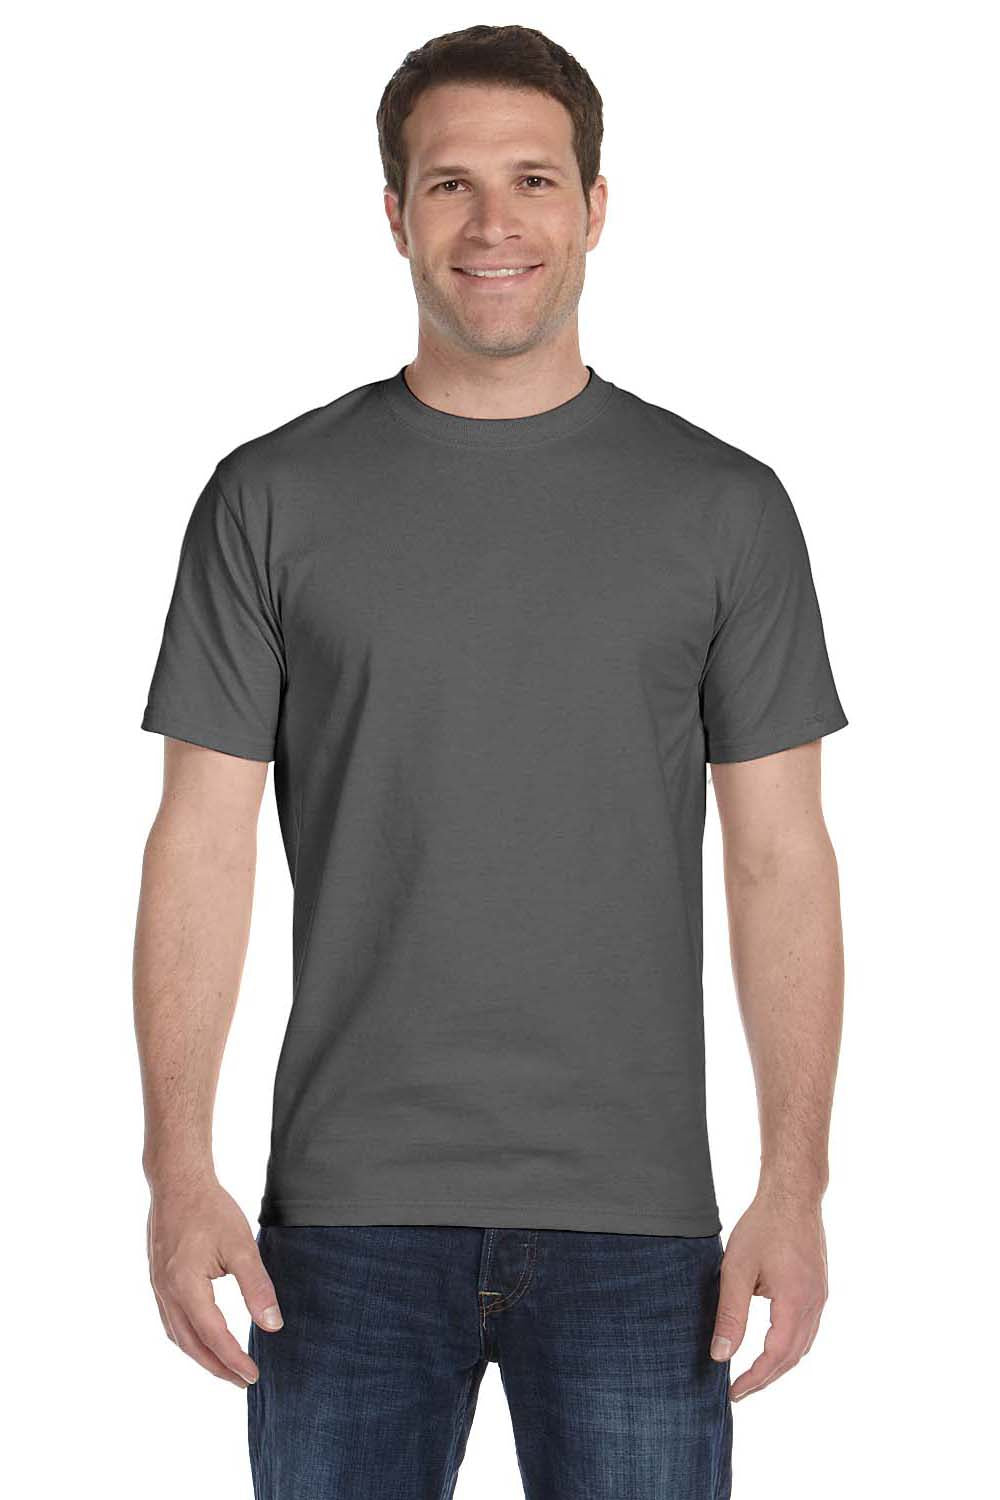 Hanes 5280 Mens ComfortSoft Short Sleeve Crewneck T-Shirt Smoke Grey Front